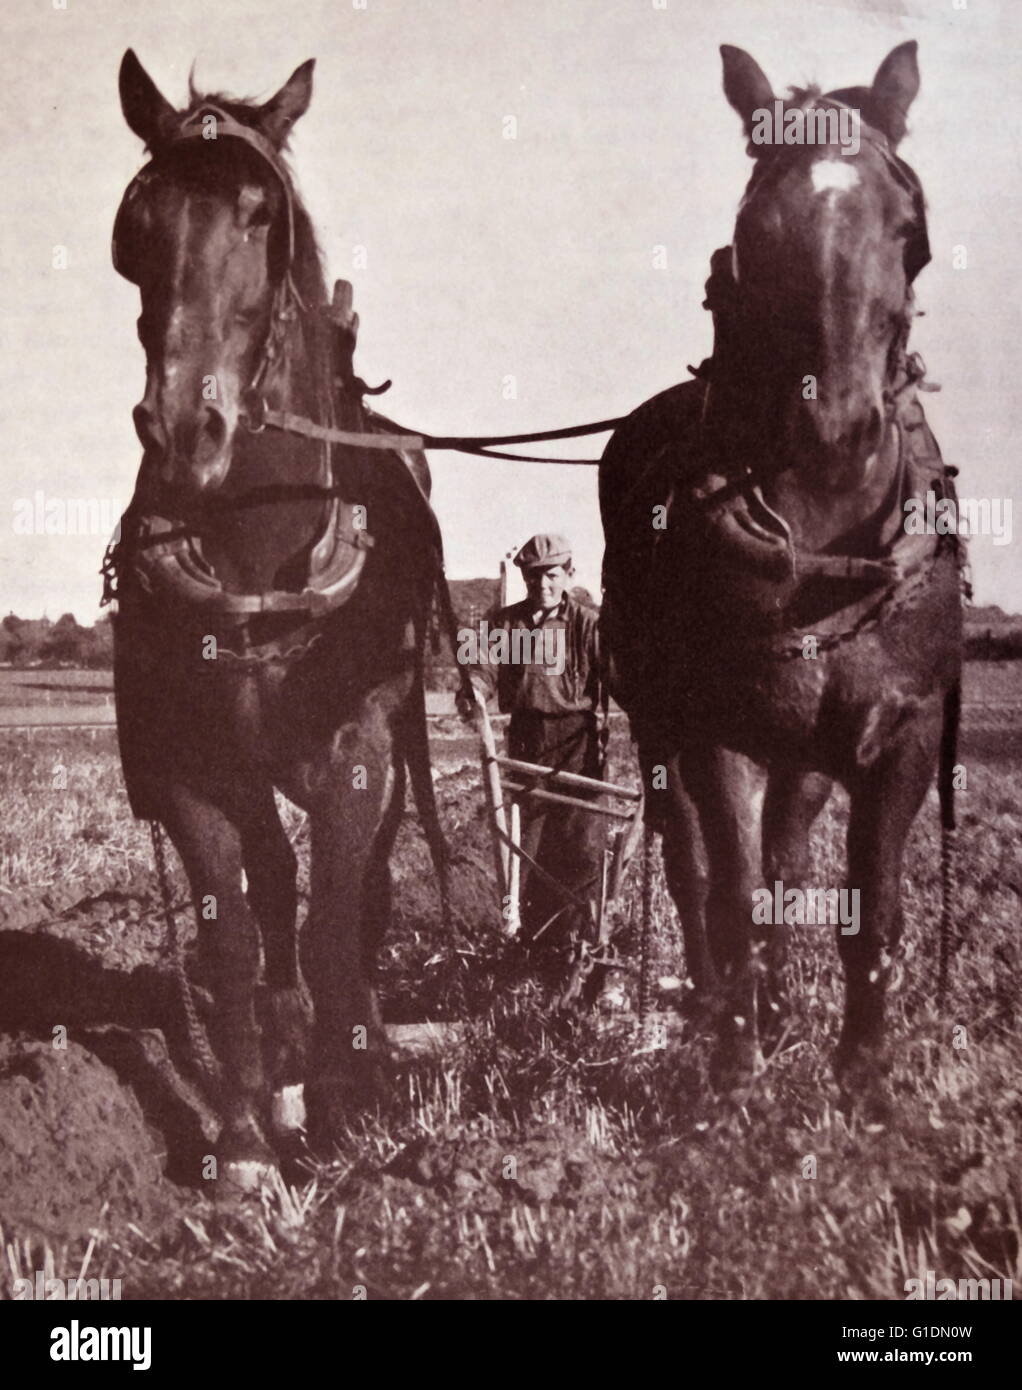 Fotodruck eines jungen Mannes mit einem Pflug von Pferden gezogen. Vom 19. Jahrhundert Stockfoto